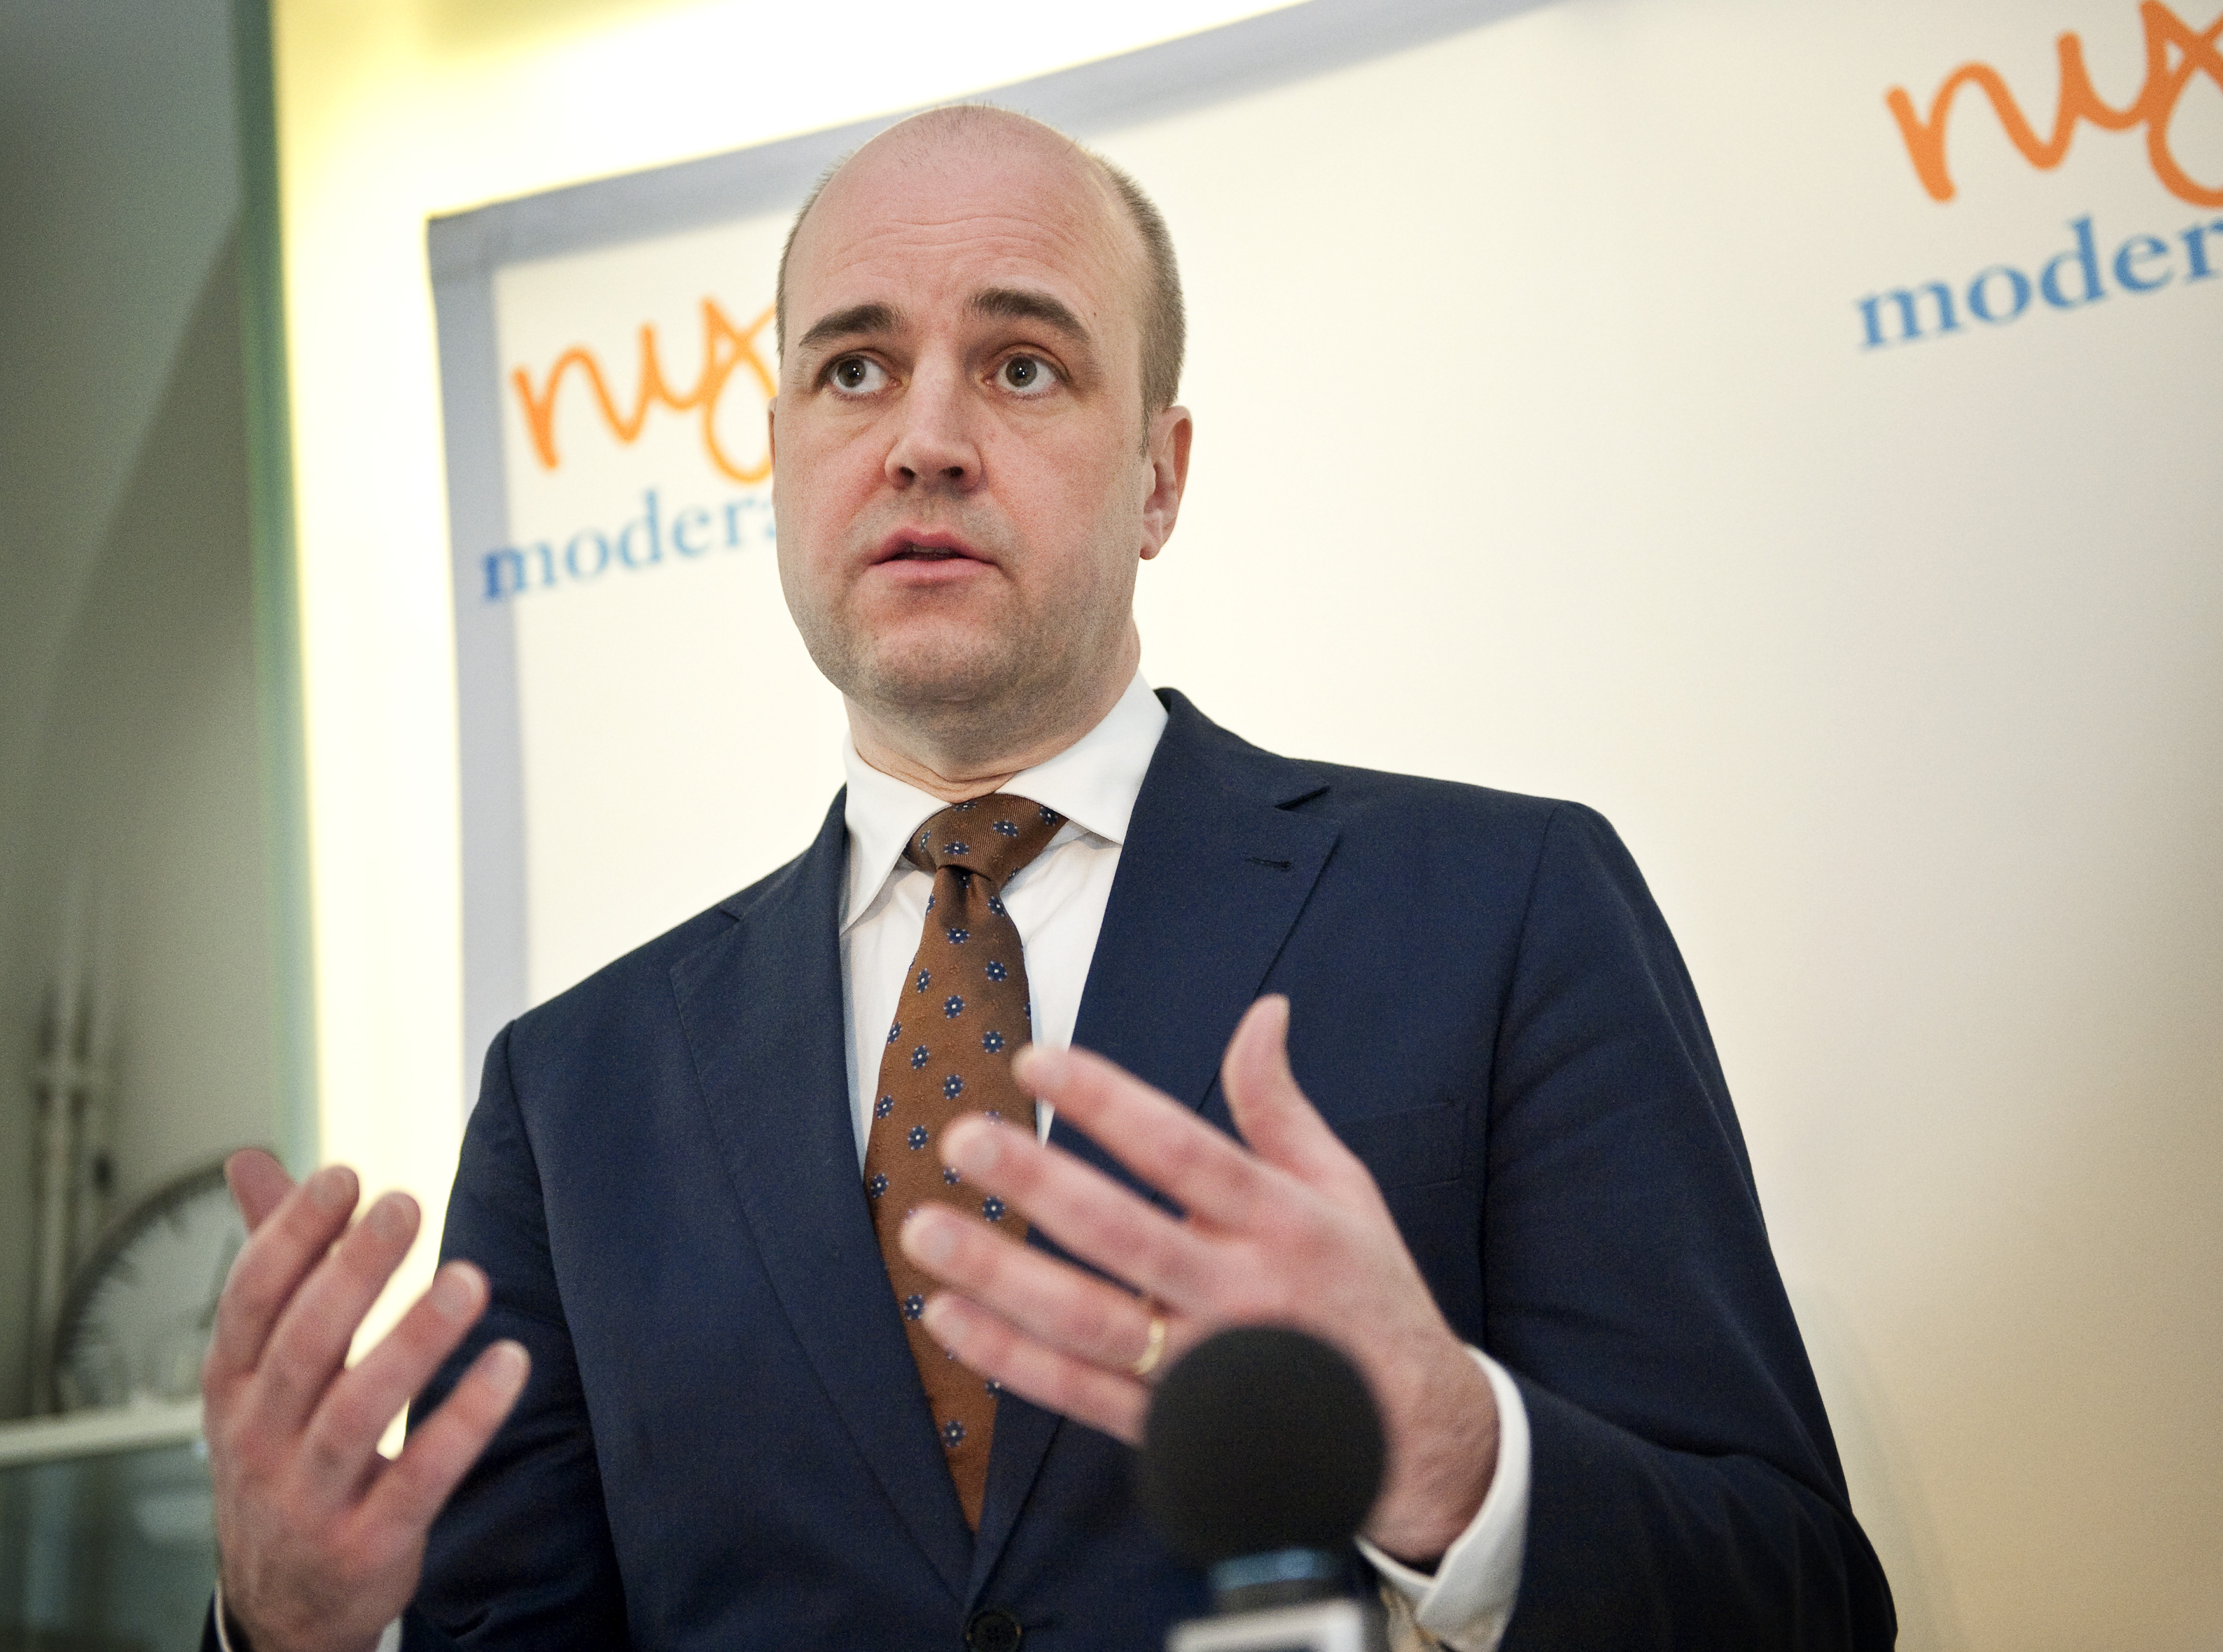 Riksdagsvalet 2010, Pappaledighet, Kvotering, Jämställdhet, Föräldraförsäkringen, Fredrik Reinfeldt